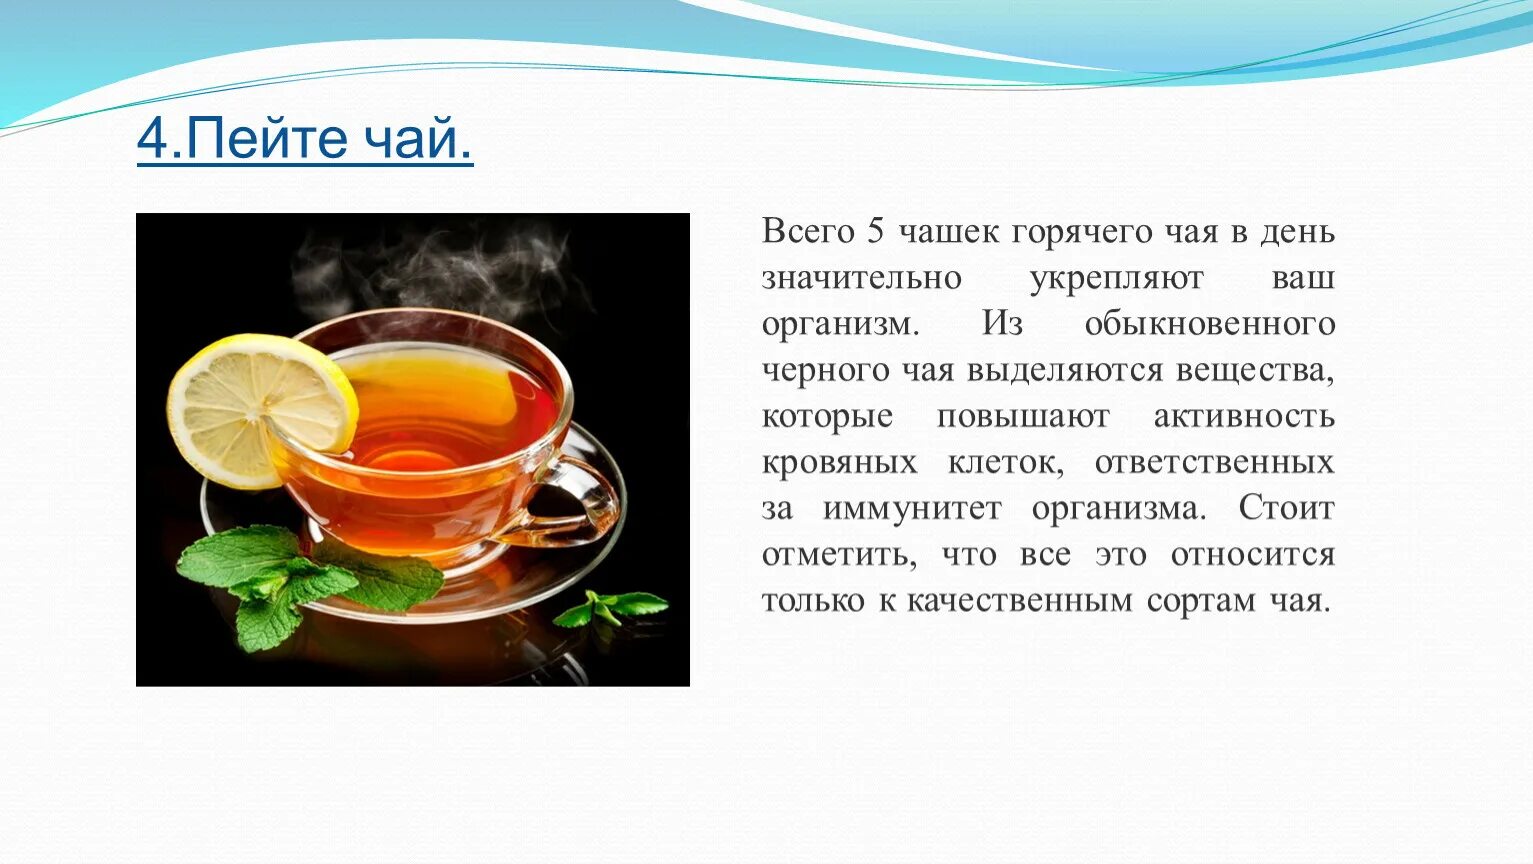 Чай картинки для презентации. Температура кружки с горячим чаем. С чем можно сравнить горячий чай. Горячий чай Оби. При температуре пьют горячий чай